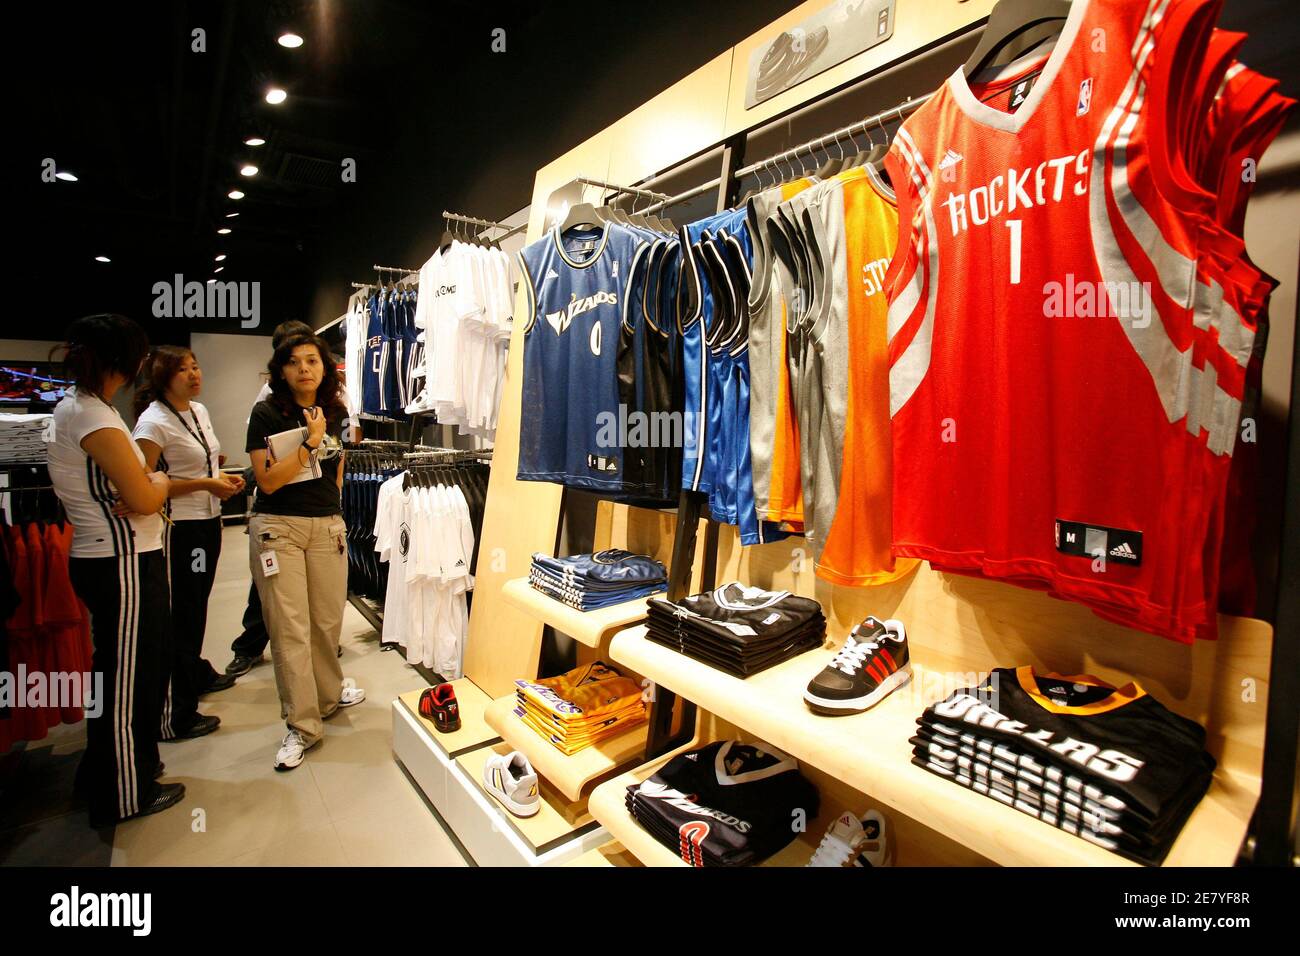 Chinesische Mitarbeiter überprüfen die Anzeige in der neuen und weltweit größte Adidas Brand Center Store in Peking 3. Juli 2008. Adidas wird die weltweit größte Adidas Store mit einer Größe 3.170